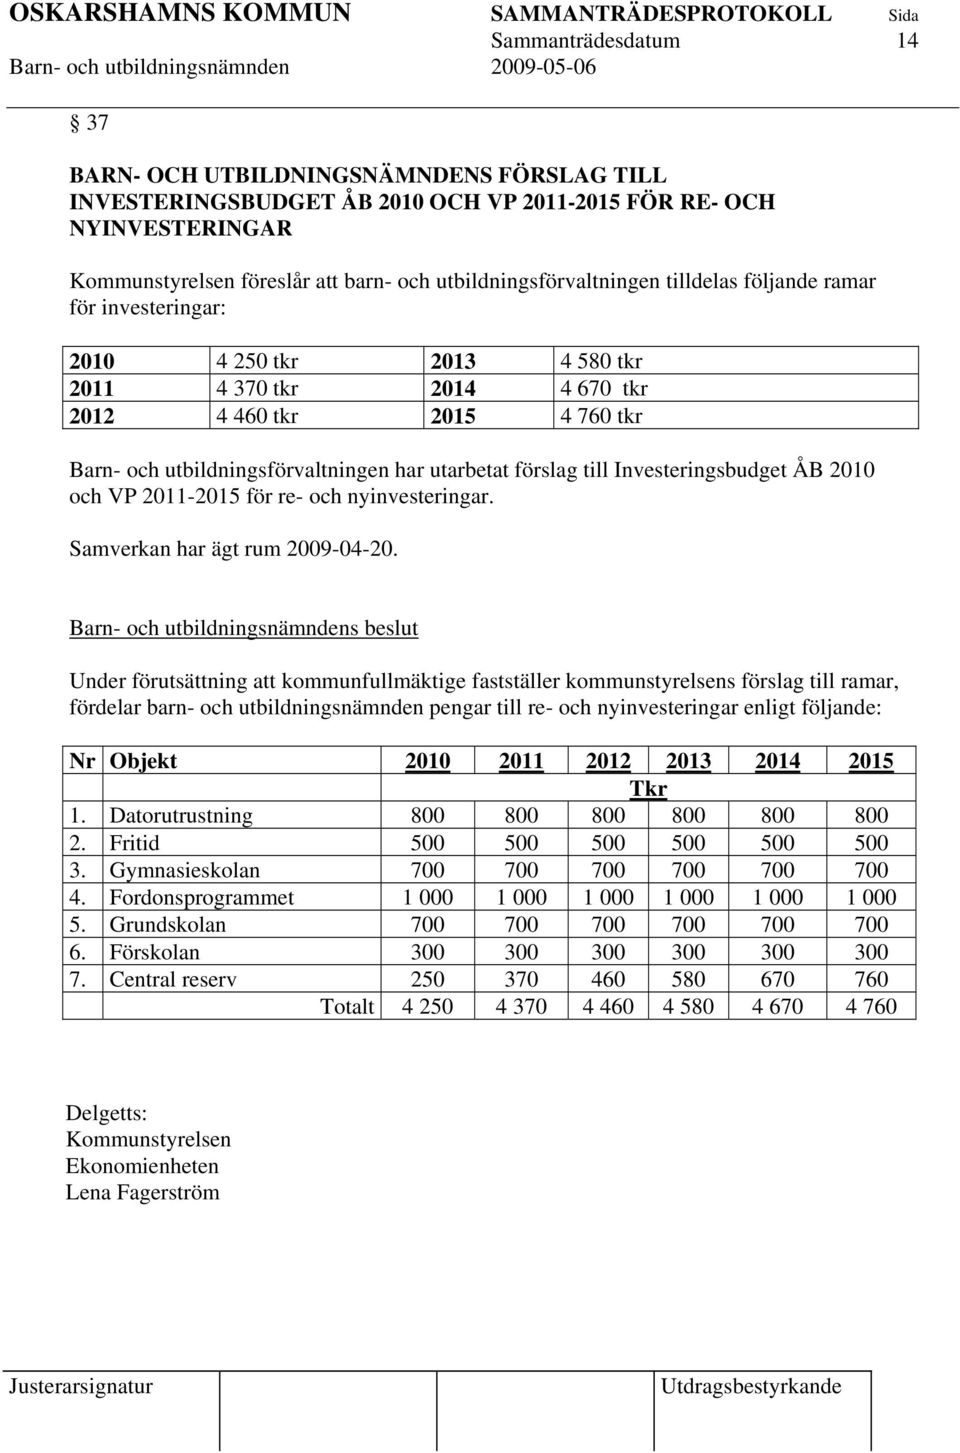 utarbetat förslag till Investeringsbudget ÅB 2010 och VP 2011-2015 för re- och nyinvesteringar. Samverkan har ägt rum 2009-04-20.